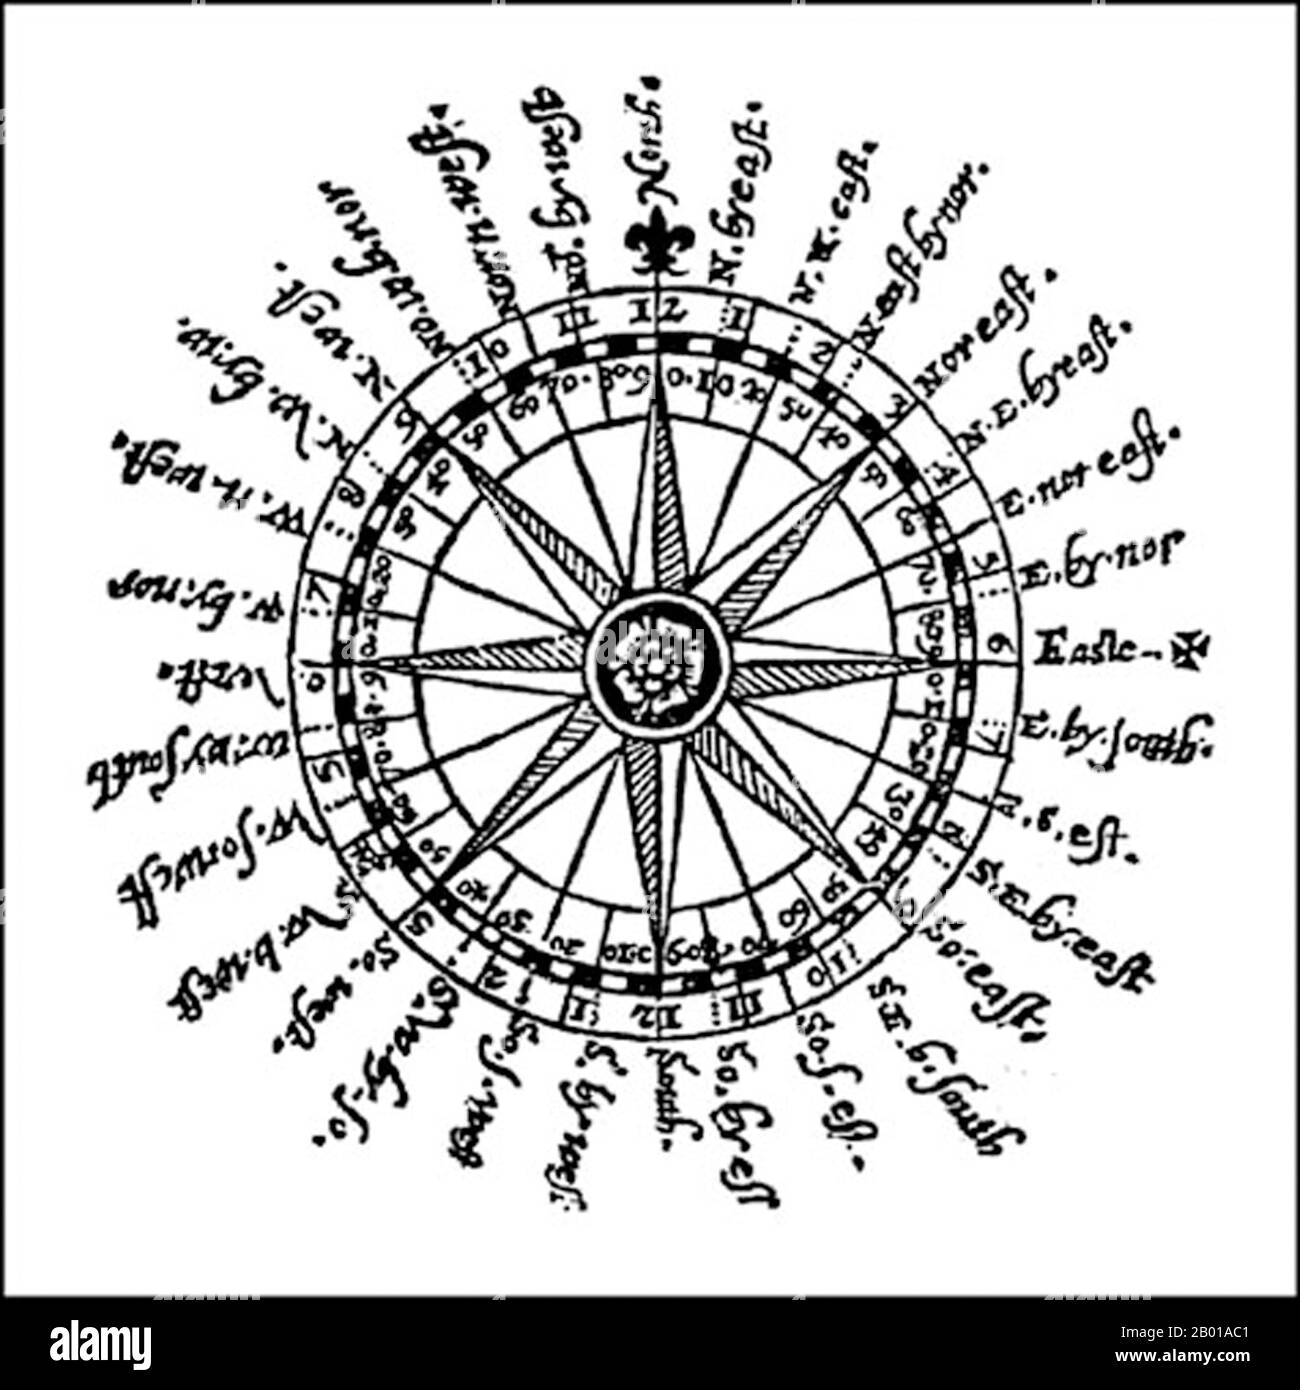 Angleterre/Royaume-Uni : un dessin précoce de la boussole d'un marin, Thomas Dawson, 1607. Une rose compas est une figure sur une carte, une carte nautique ou parfois une pierre ou un mur de pavage, utilisée pour afficher l'orientation des directions cardinales, — nord, sud, est et ouest. C'est aussi le terme pour les marques graduées trouvées sur la compassion magnétique traditionnelle. Aujourd'hui, l'idée d'une boussole rose est présente dans presque tous les systèmes de navigation. Les premières formes de la rose de la boussole étaient connues sous le nom de roses du vent, car aucune différenciation n'a été faite entre une direction cardinal et les vents qui émanaient de cette direction. Banque D'Images